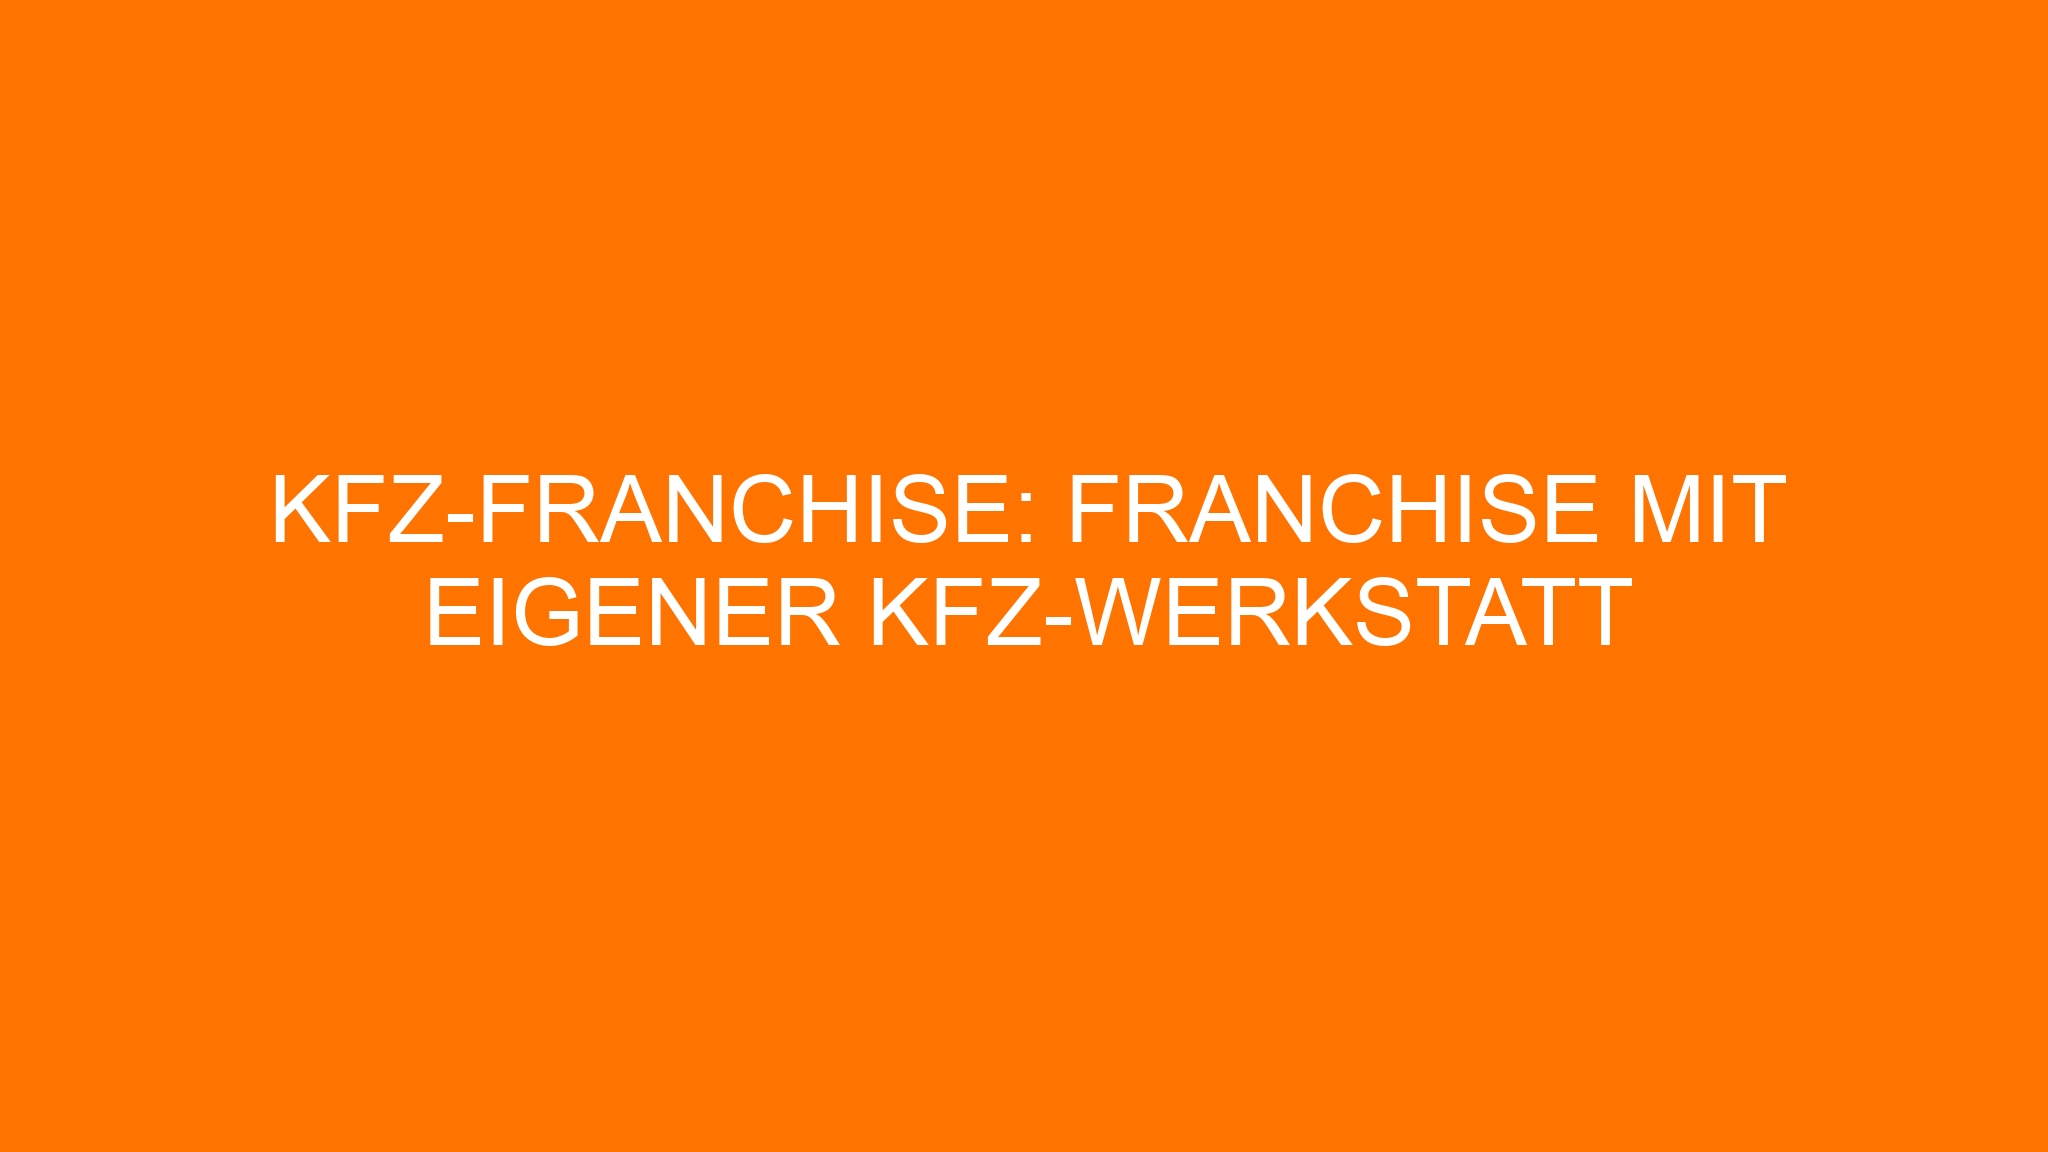 KFZ-Franchise: Franchise mit eigener KFZ-Werkstatt